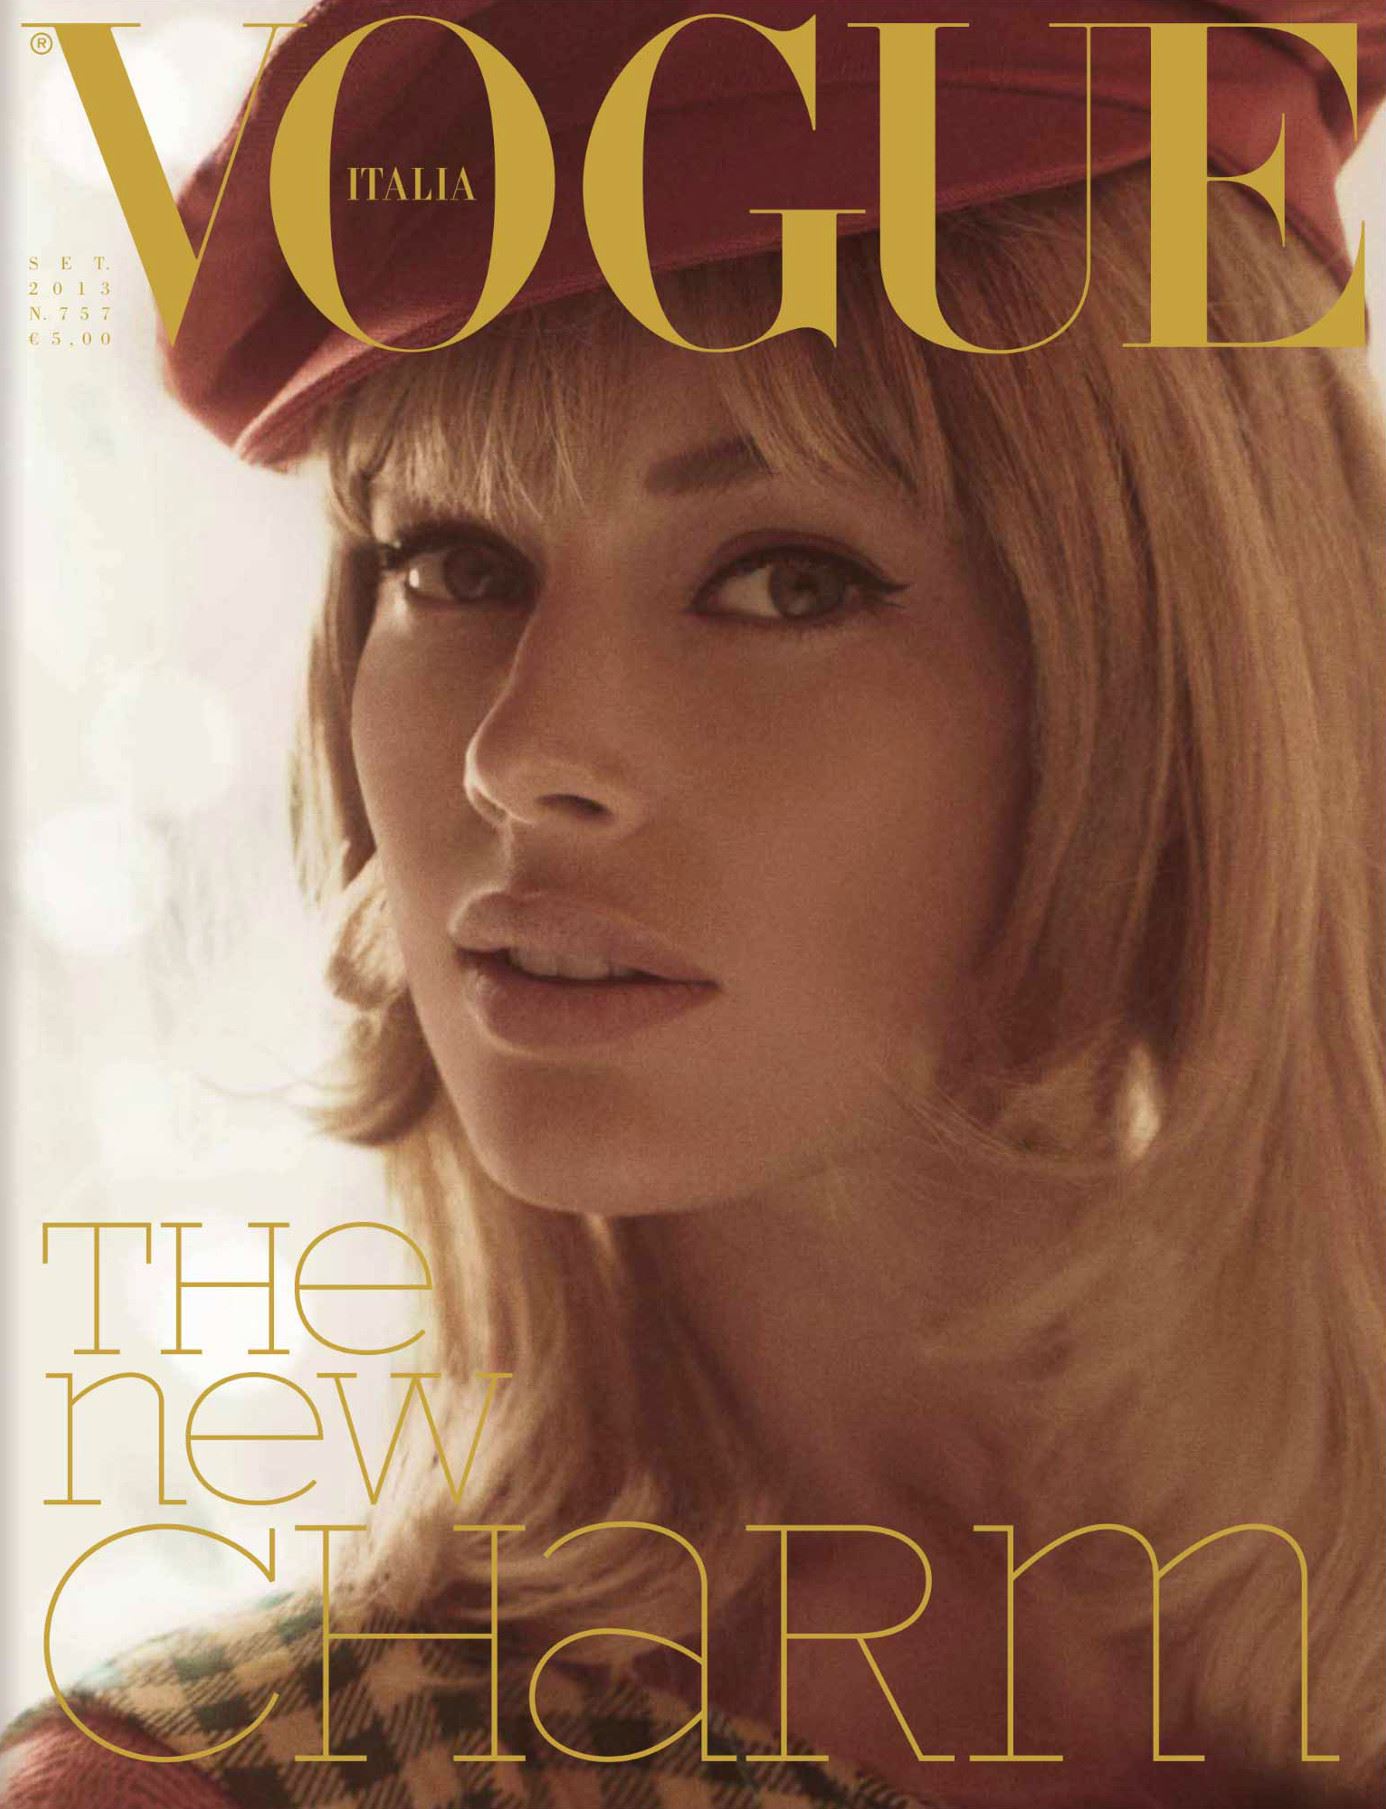 Couverture de "Vogue Italia" Septembre 2013